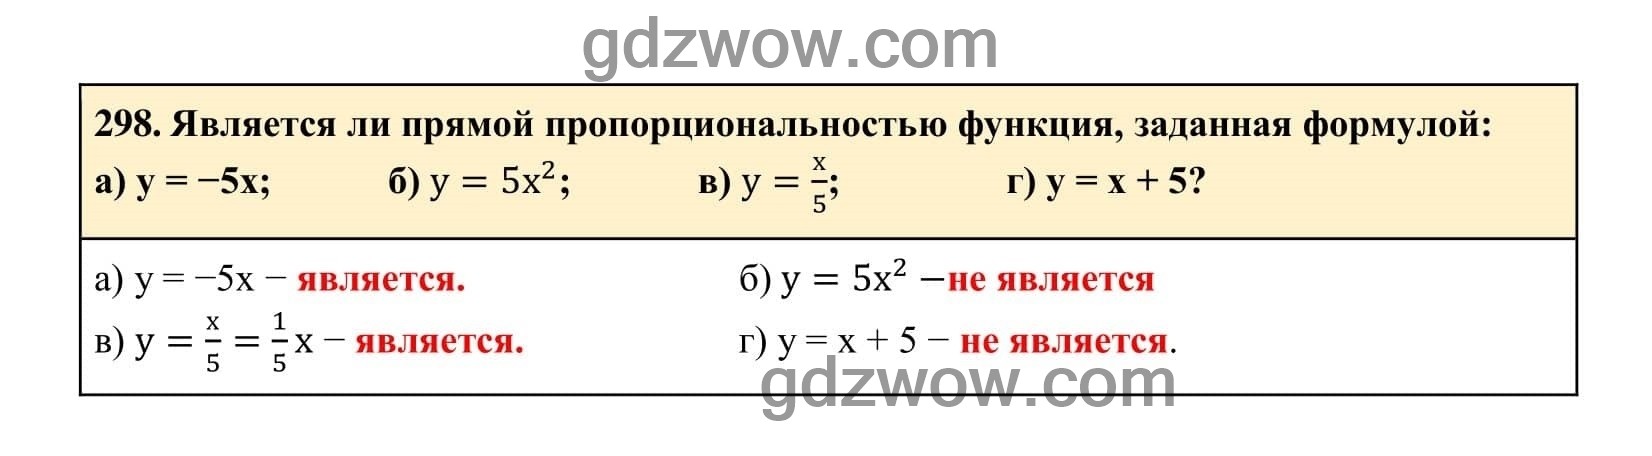 Упражнение 298 - ГДЗ по Алгебре 7 класс Учебник Макарычев (решебник) - GDZwow